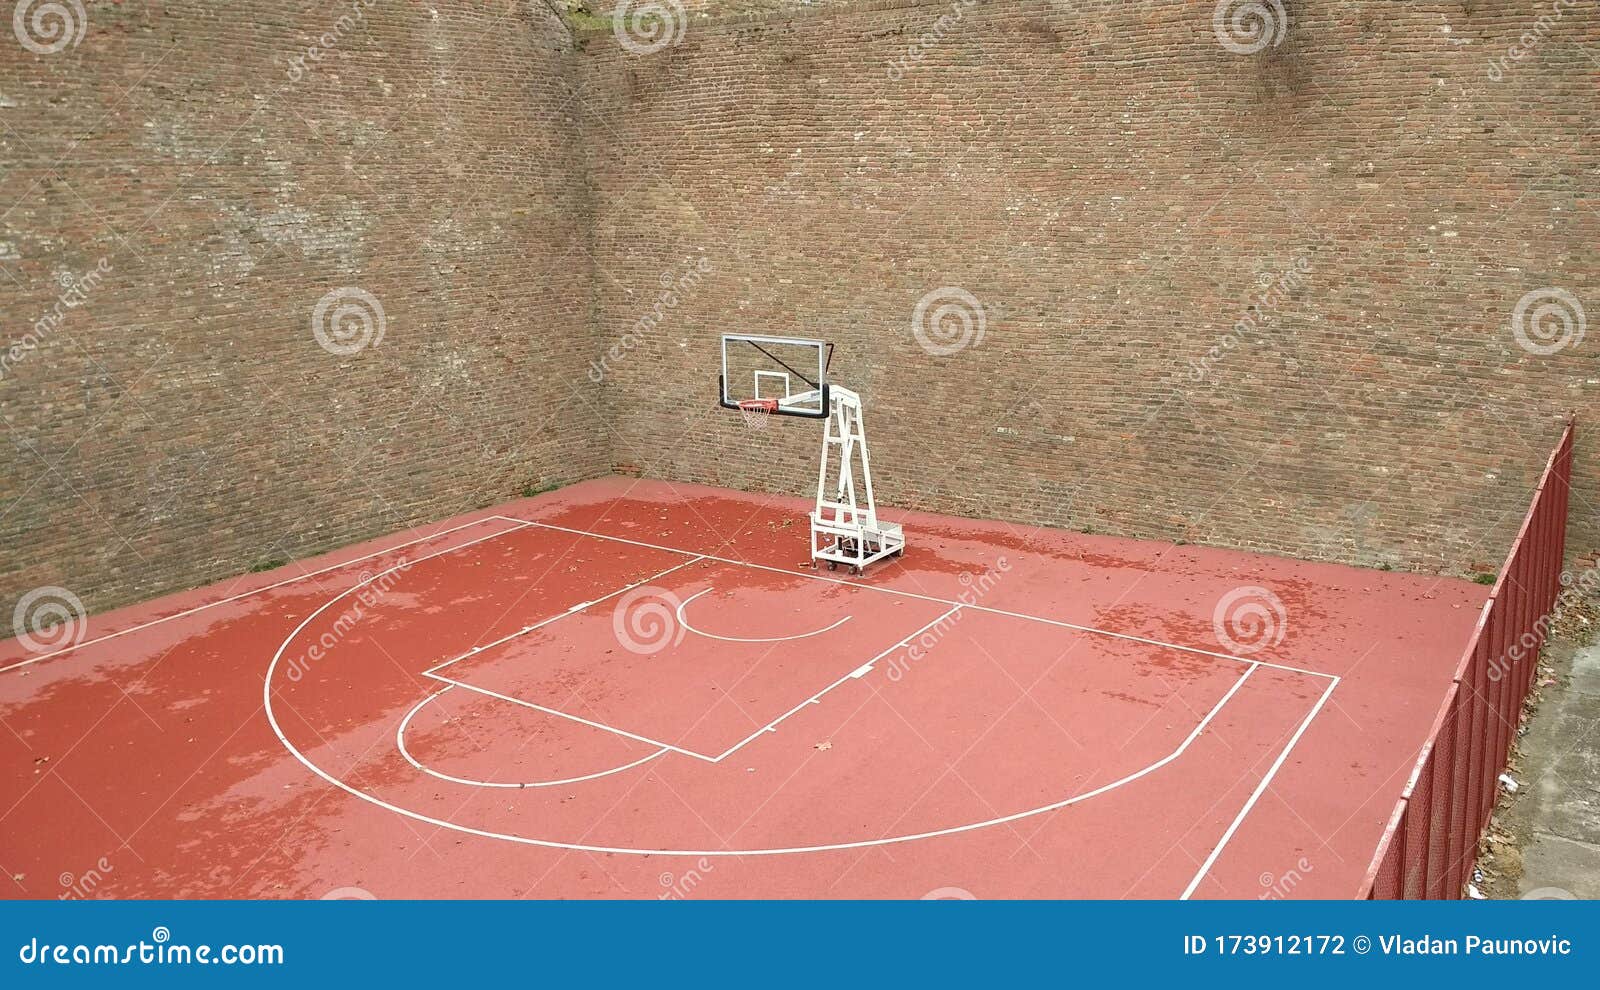 Media cancha de baloncesto foto de archivo. Imagen de rodeado - 173912172